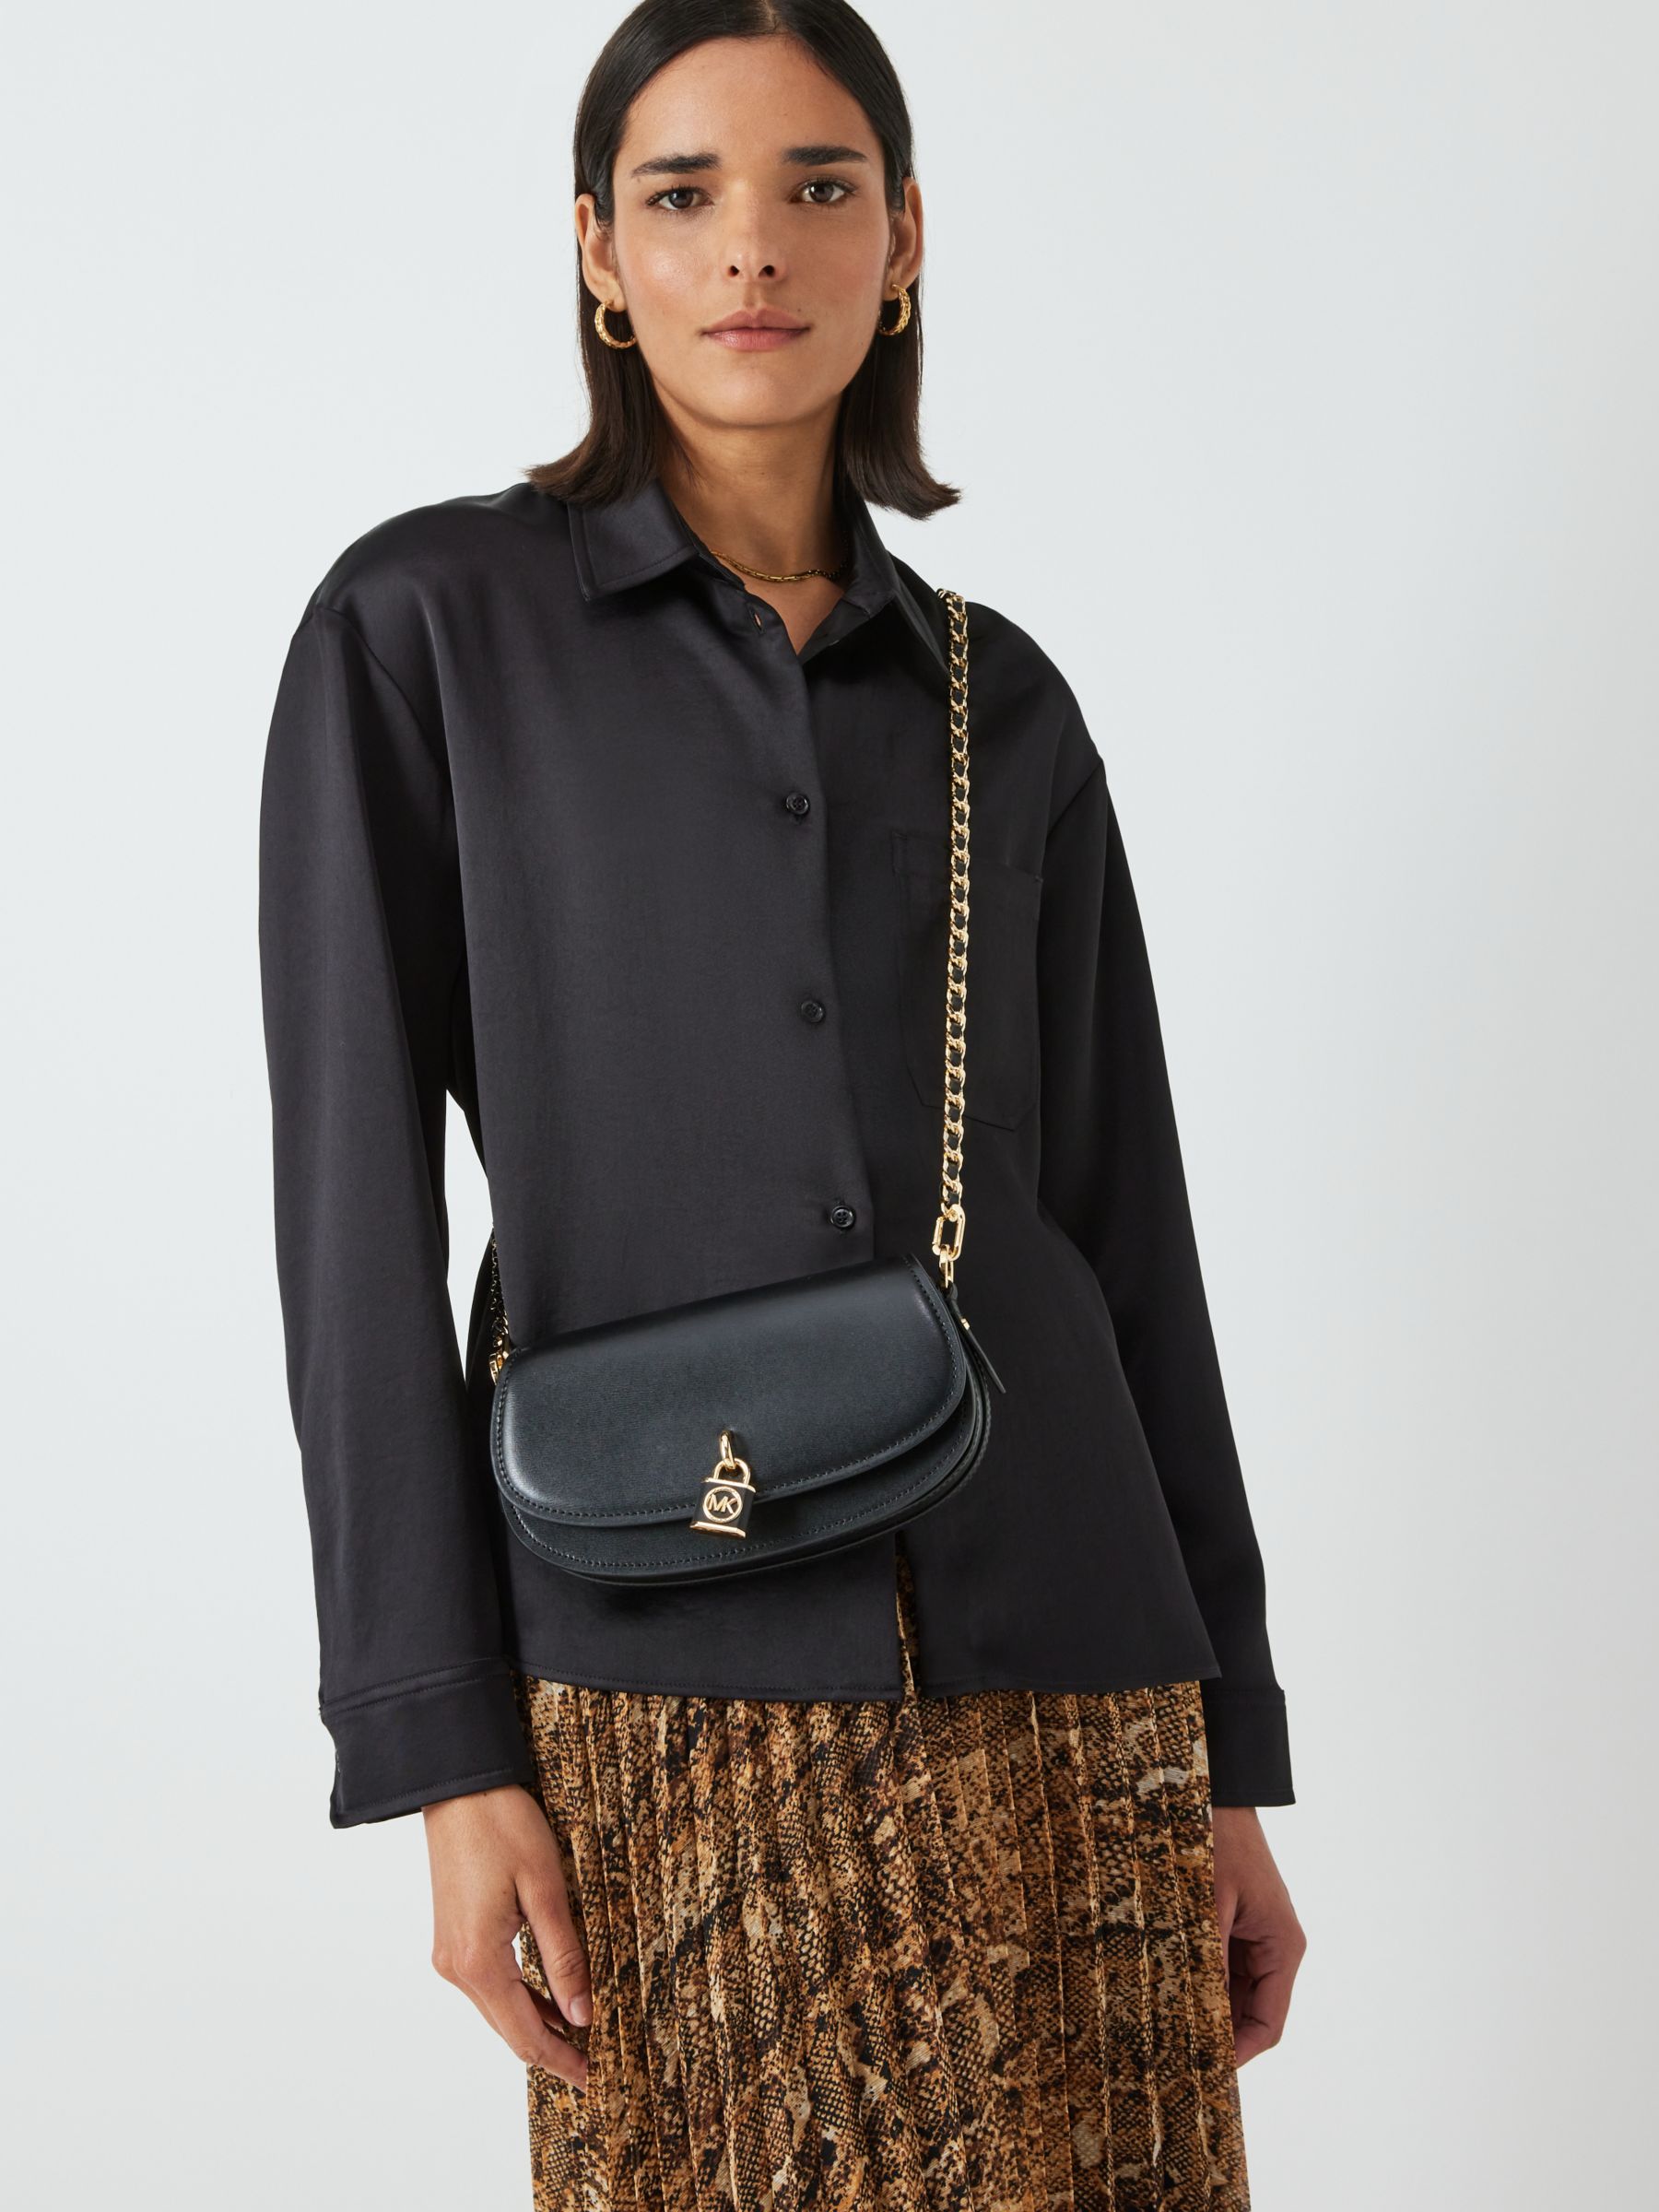 Michael Kors Mila Leather Shoulder Bag, Black at John Lewis & Partners